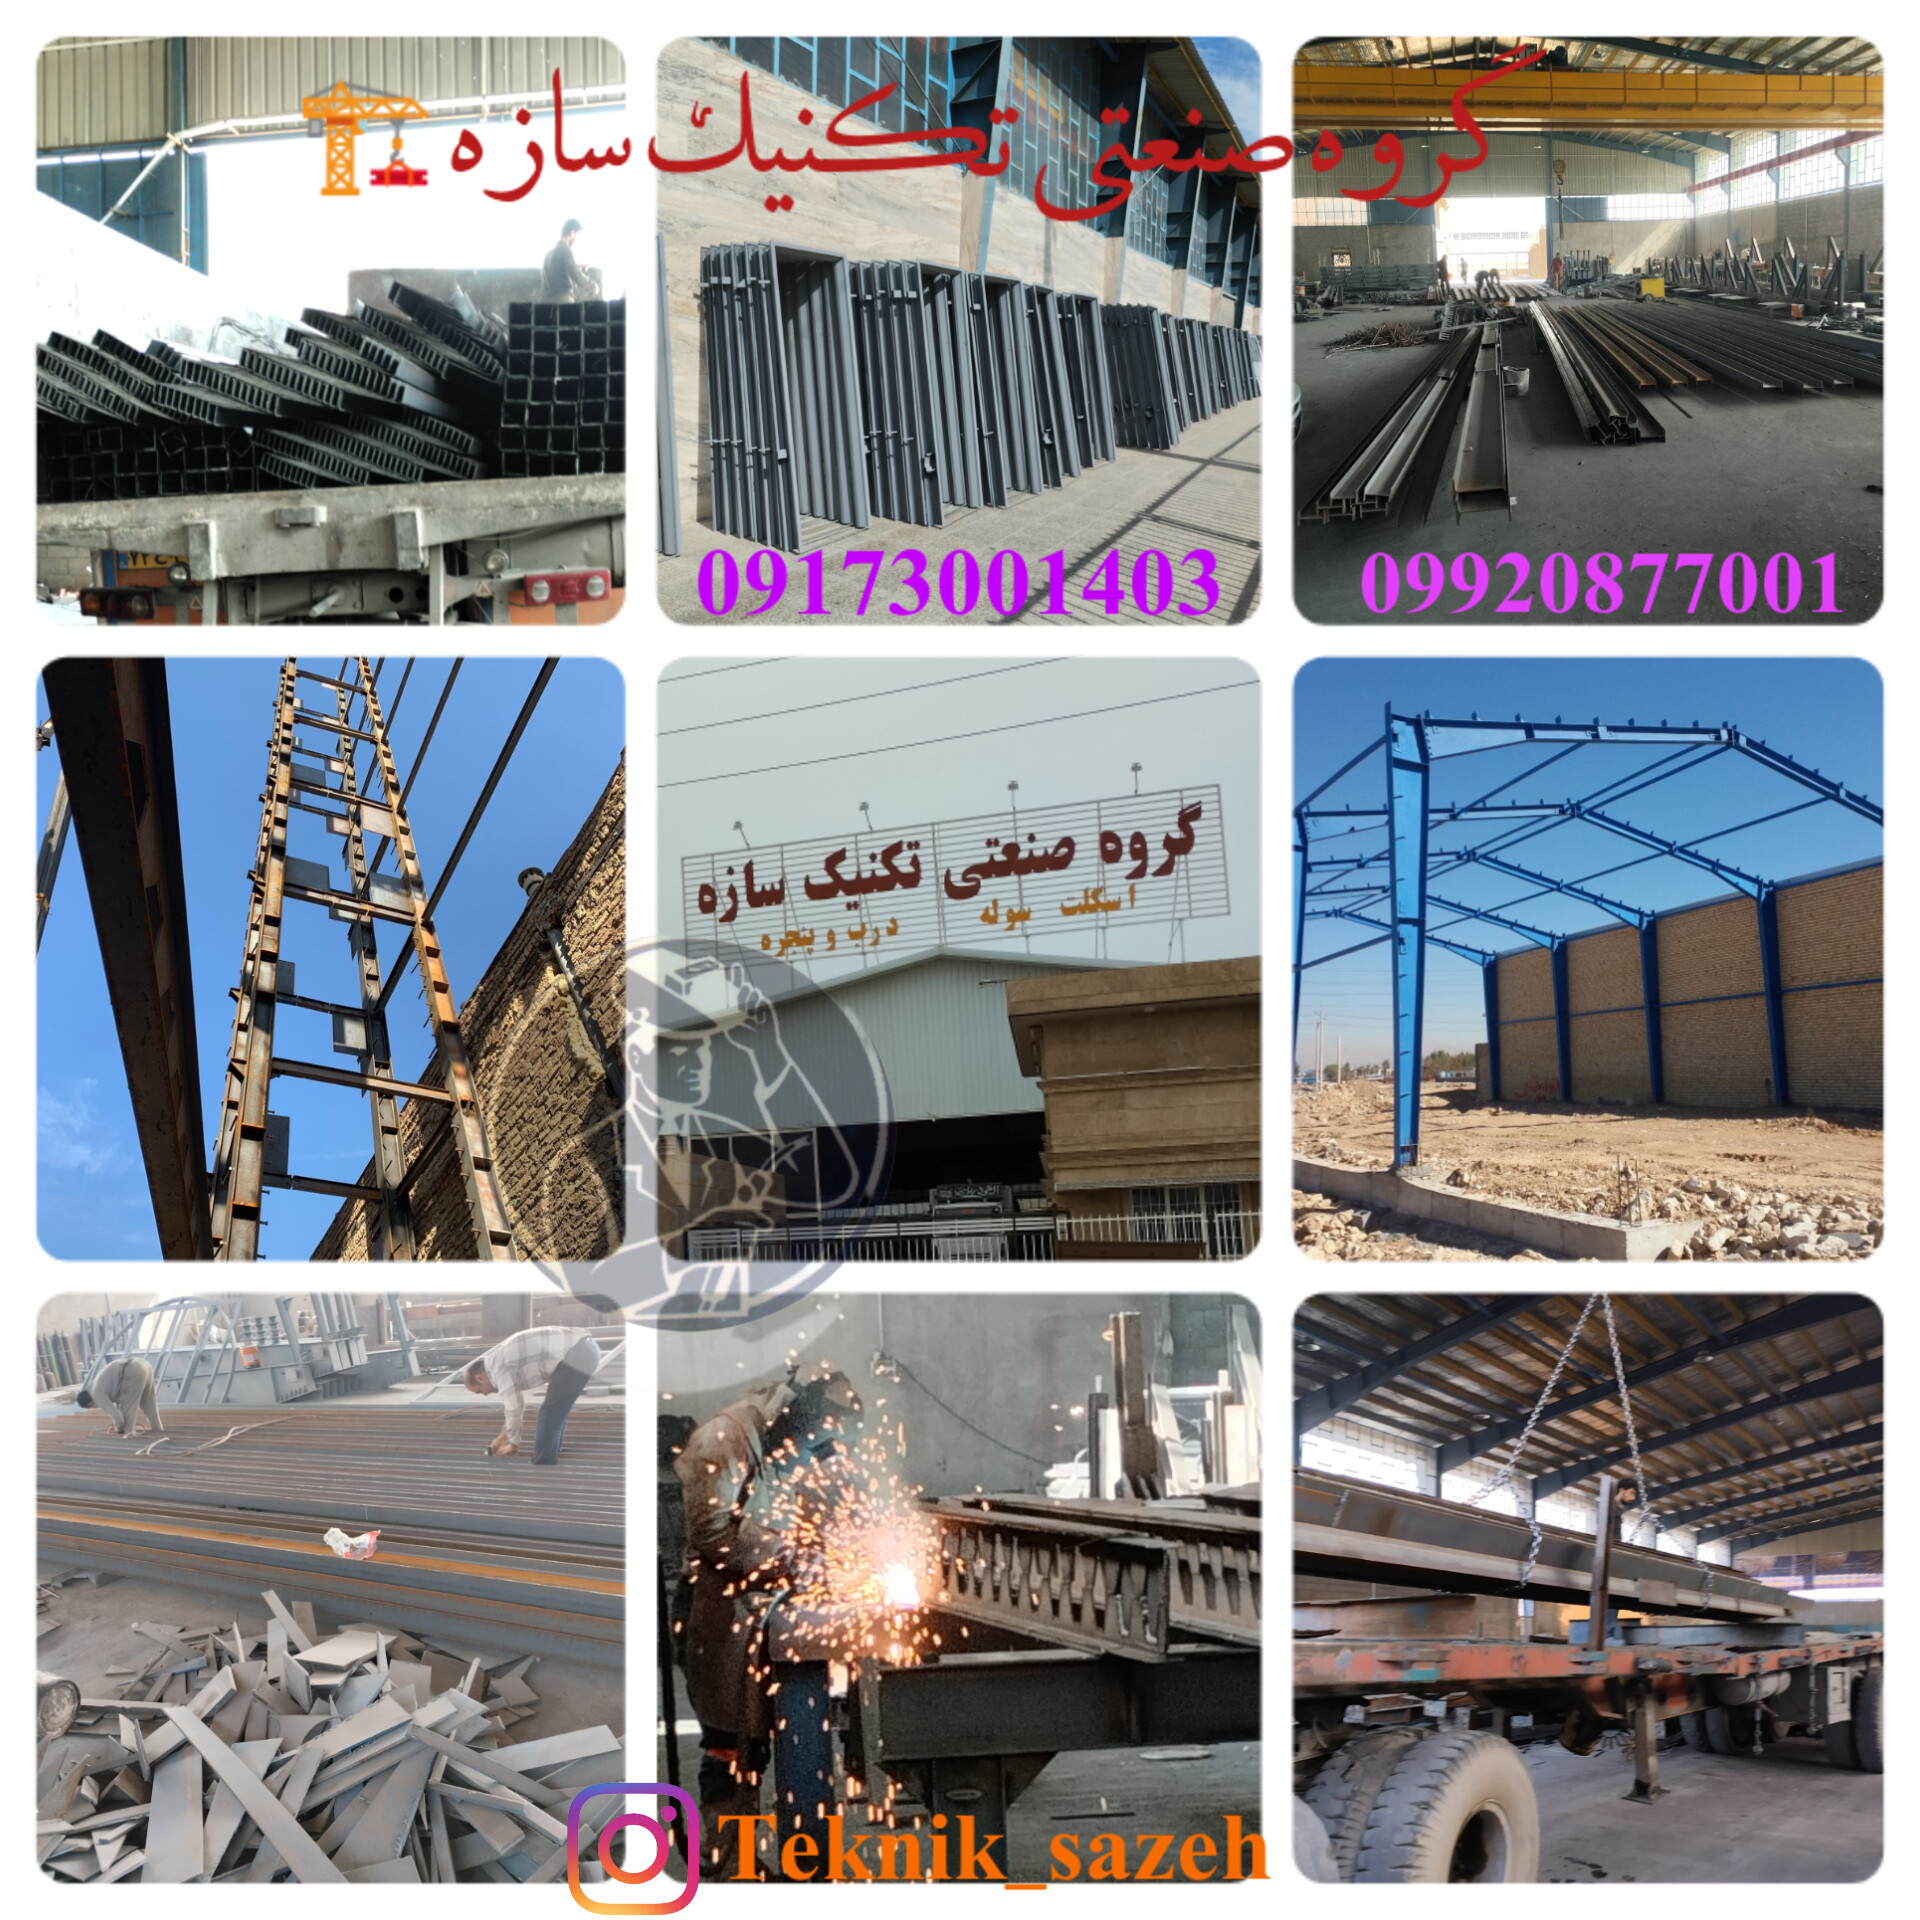 بزرگترین تولید کننده چهارچوب فلزی در استان فارس گروه صنعتی تکنیک سازه